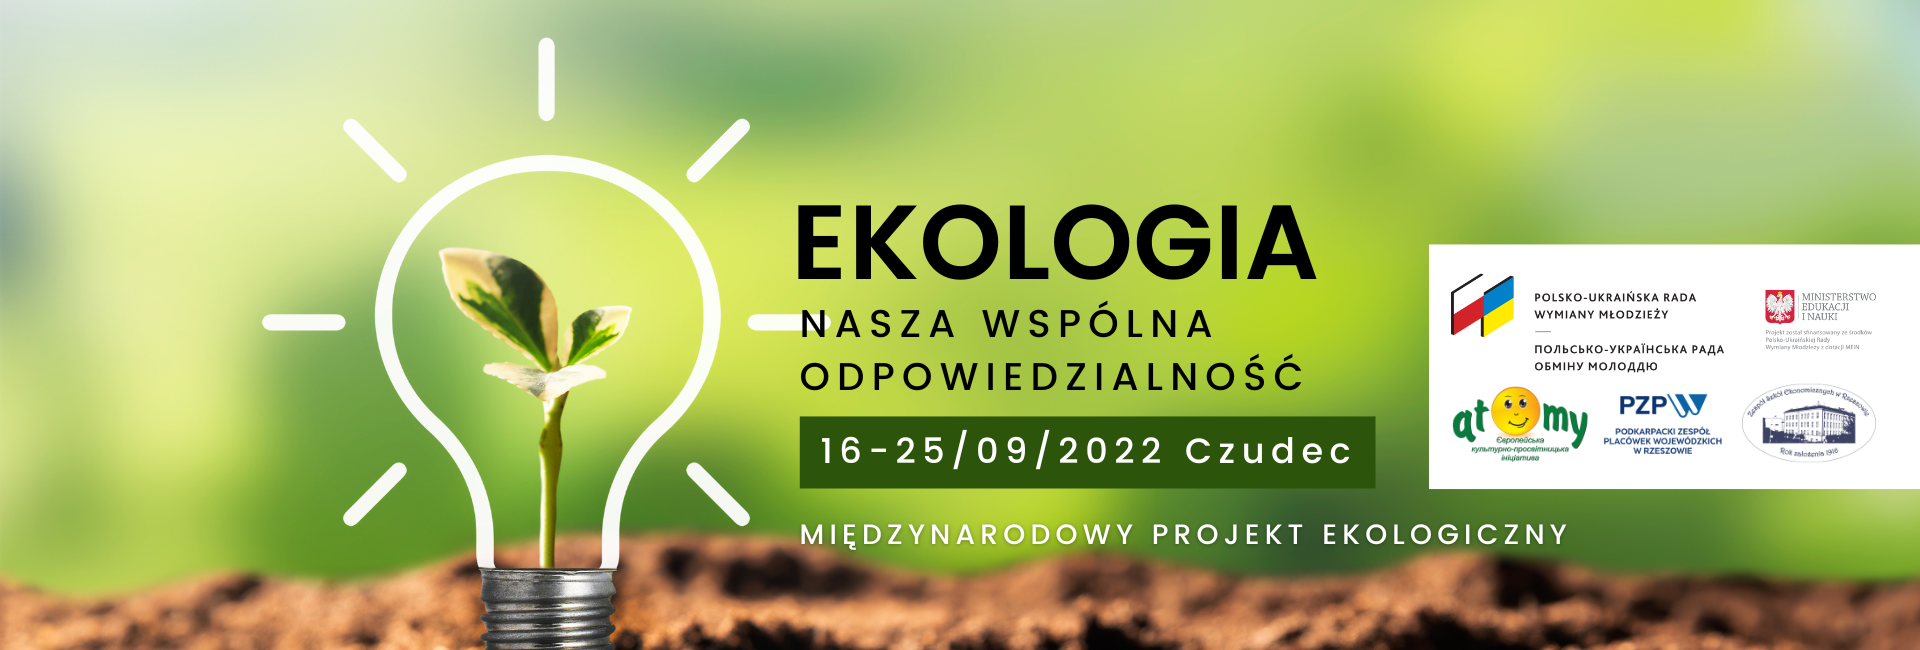 Ekologia nasza wspólna odpowiedzialność, Międzynarodowy projekt ekologiczny  16-21 września 2022 Czudec